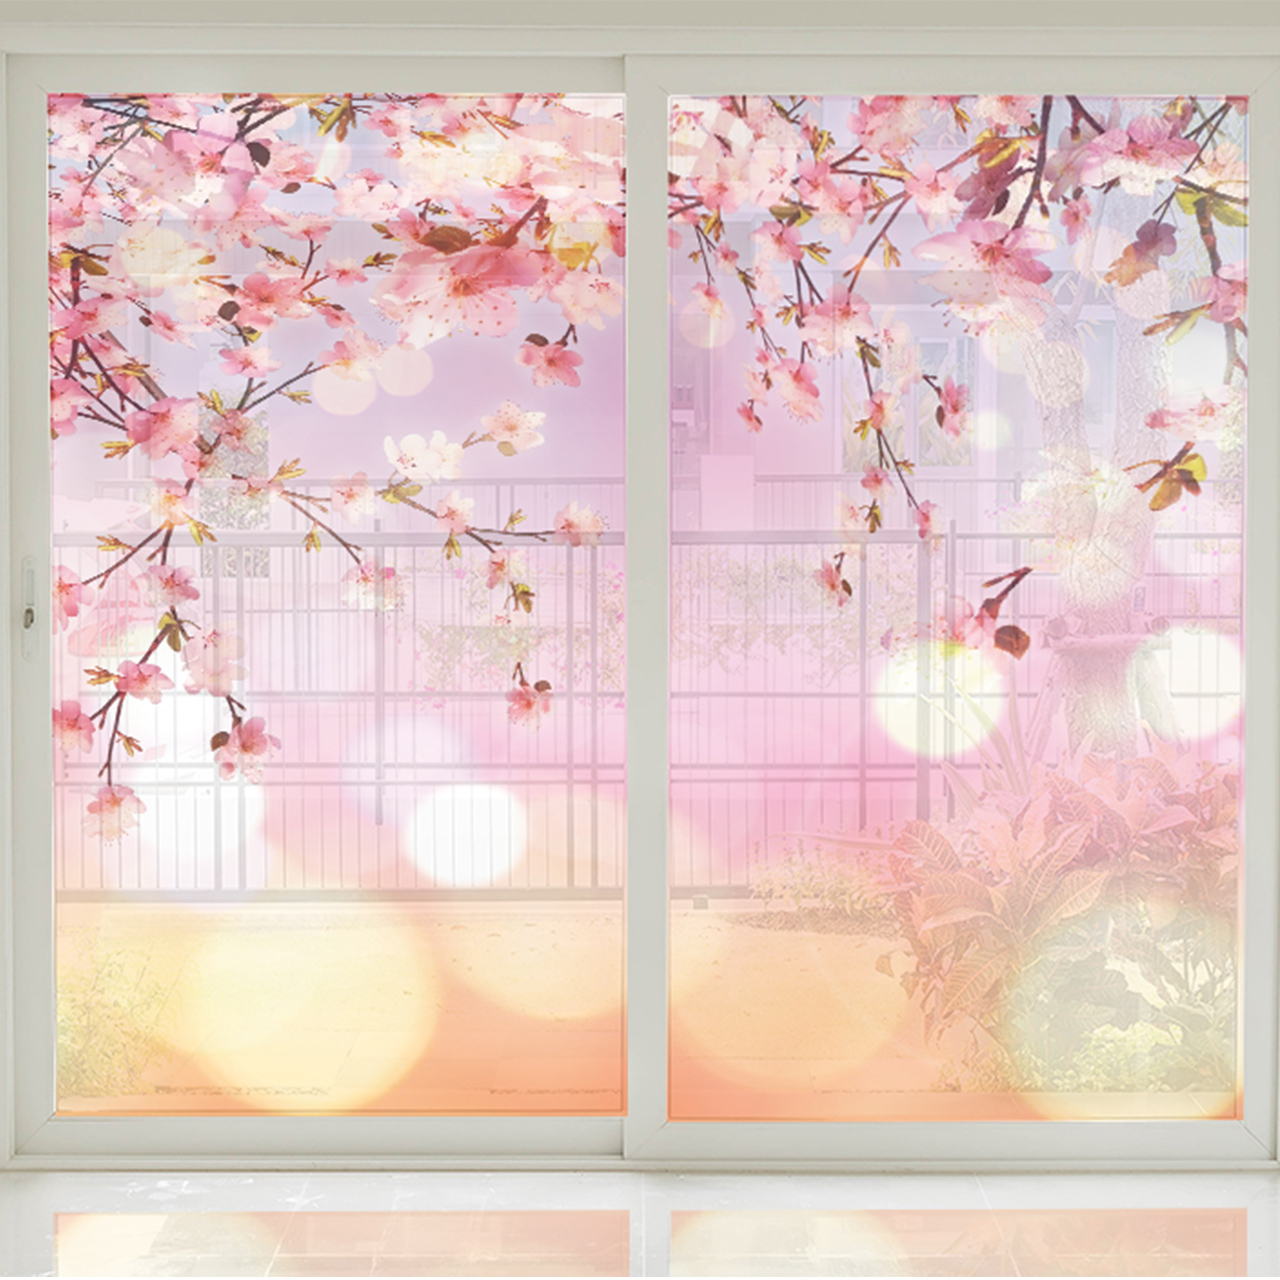 استیکر شیشه طرح beautiful blossom بسته دو عددی